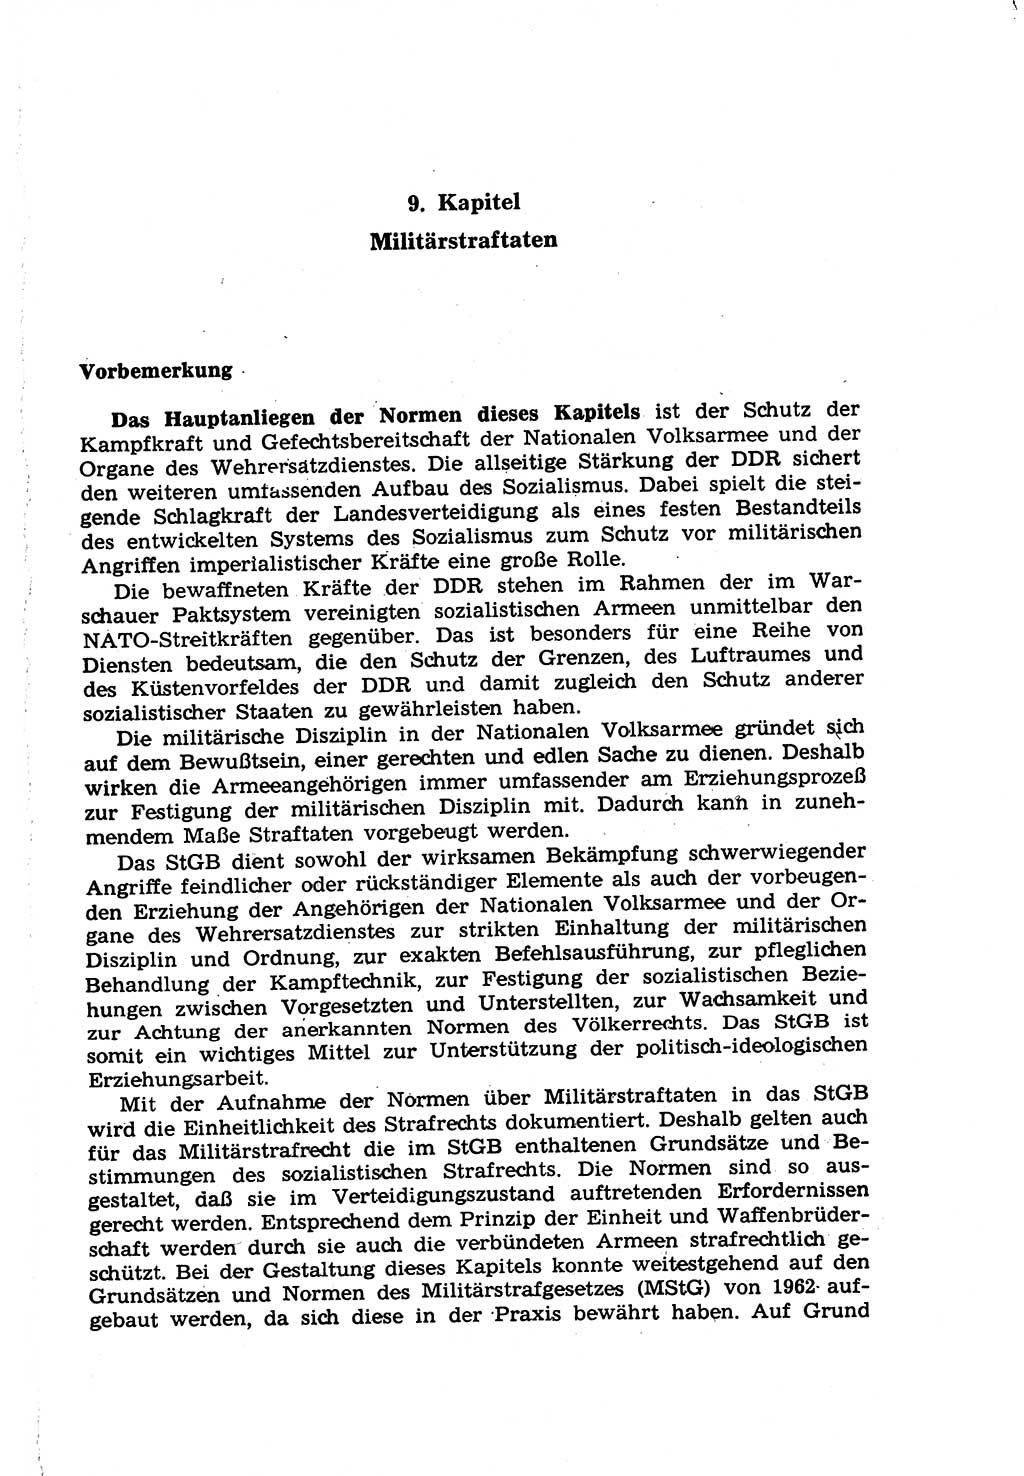 Strafrecht der Deutschen Demokratischen Republik (DDR), Lehrkommentar zum Strafgesetzbuch (StGB), Besonderer Teil 1970, Seite 295 (Strafr. DDR Lehrkomm. StGB BT 1970, S. 295)